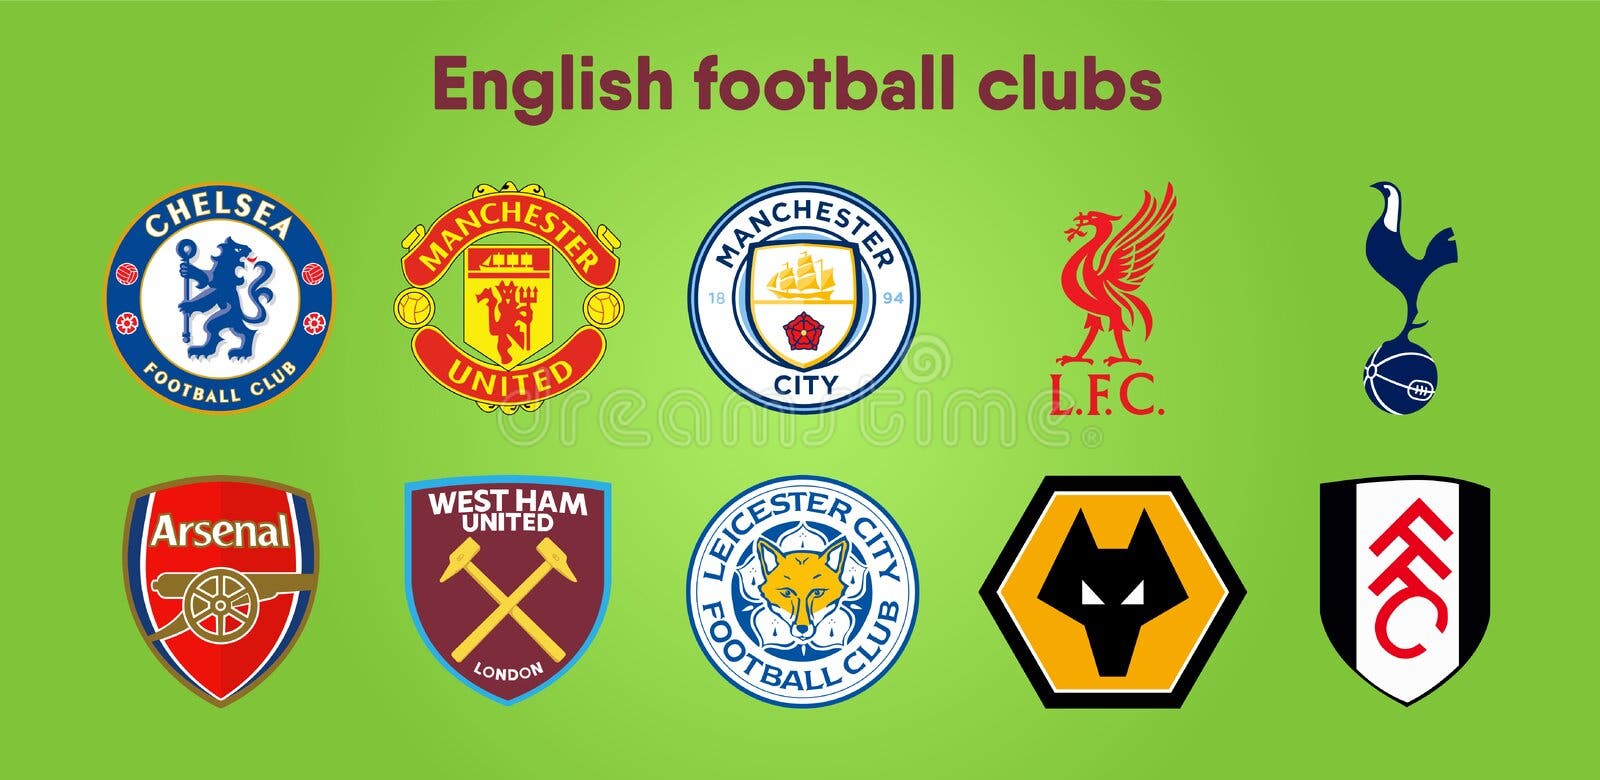 SOCCER: England Premier League crests 2012-13 infographic